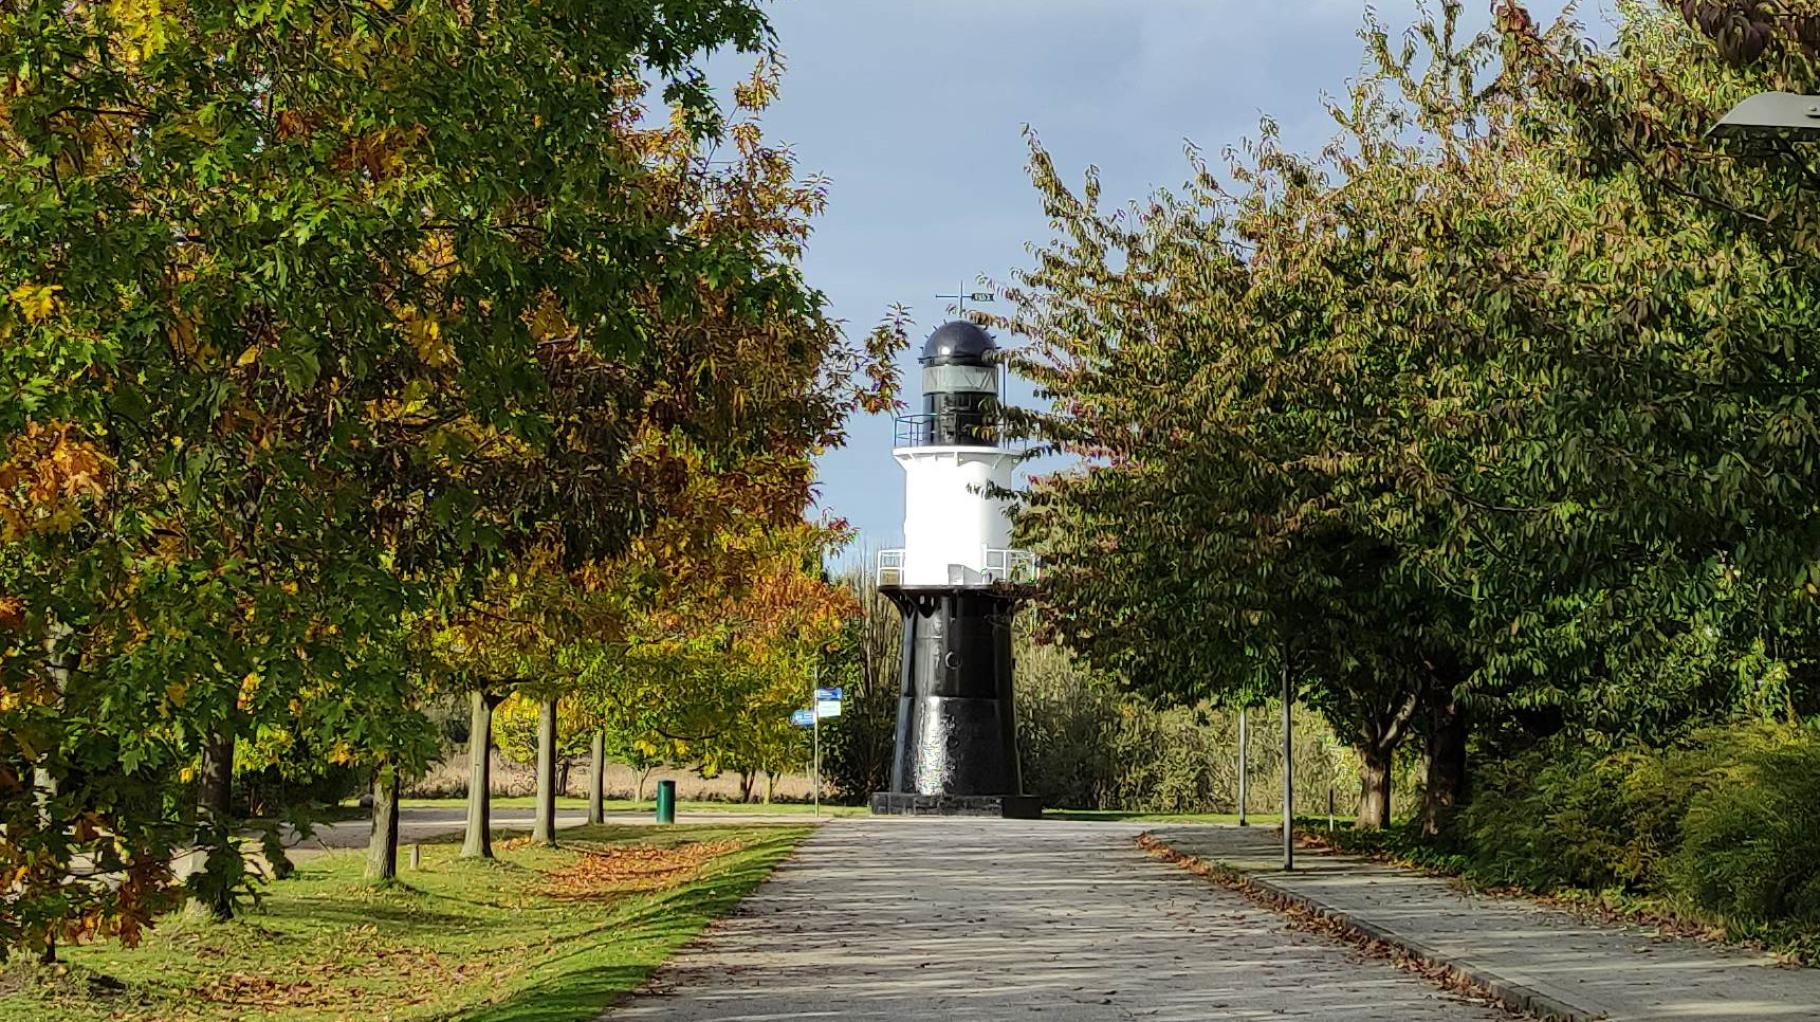 60 Jahre alter Rostocker Leuchtturm saniert und für kommende Jahrzehnte gesichert